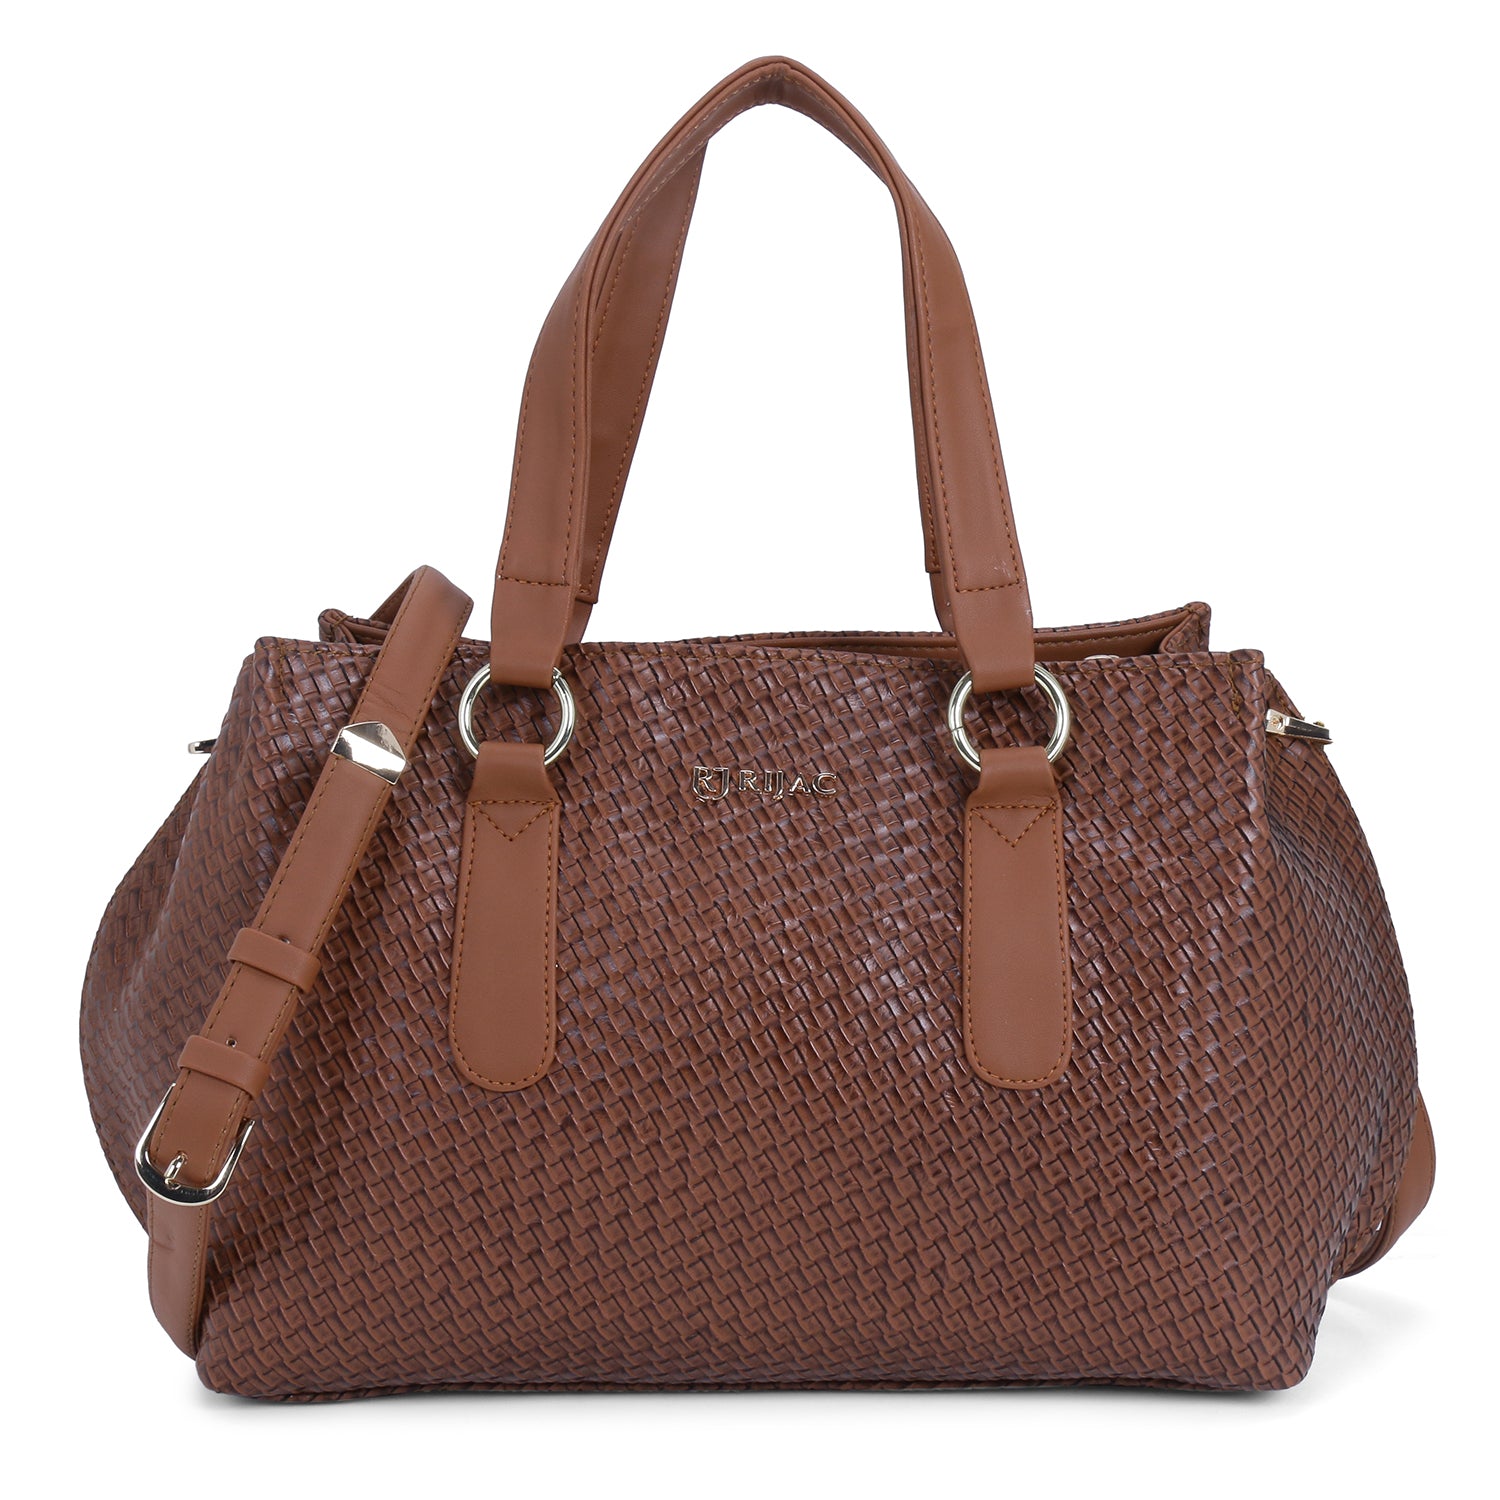 The brown woven handbag.